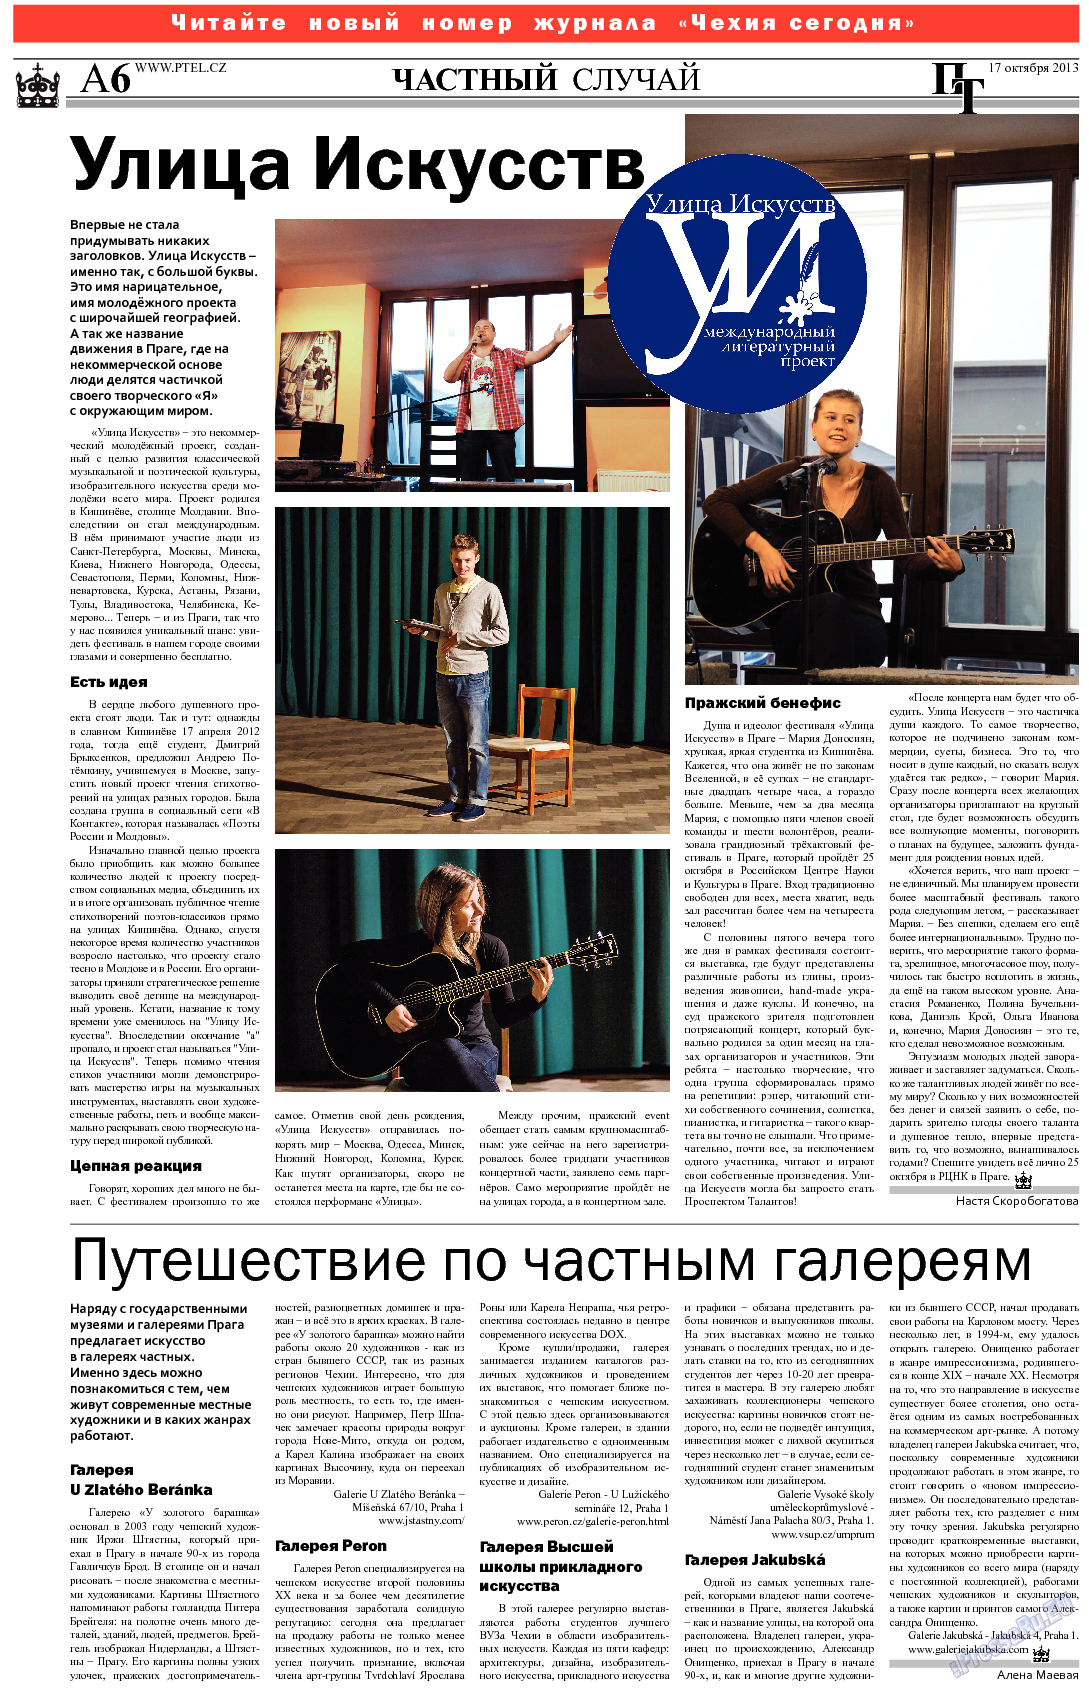 Пражский телеграф (газета). 2013 год, номер 41, стр. 6